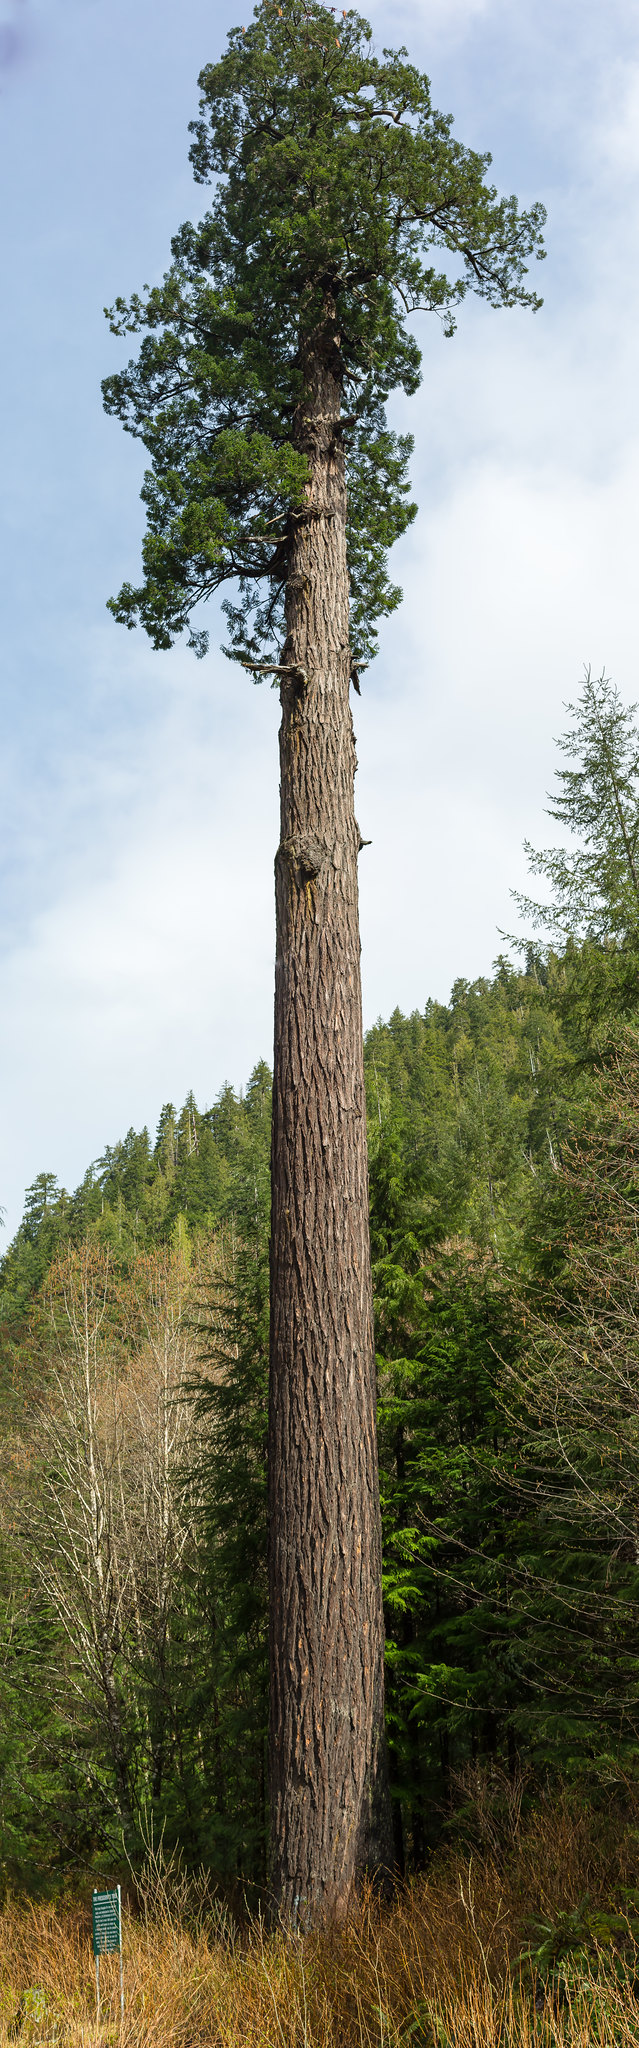 Vancouver Island. President's Tree